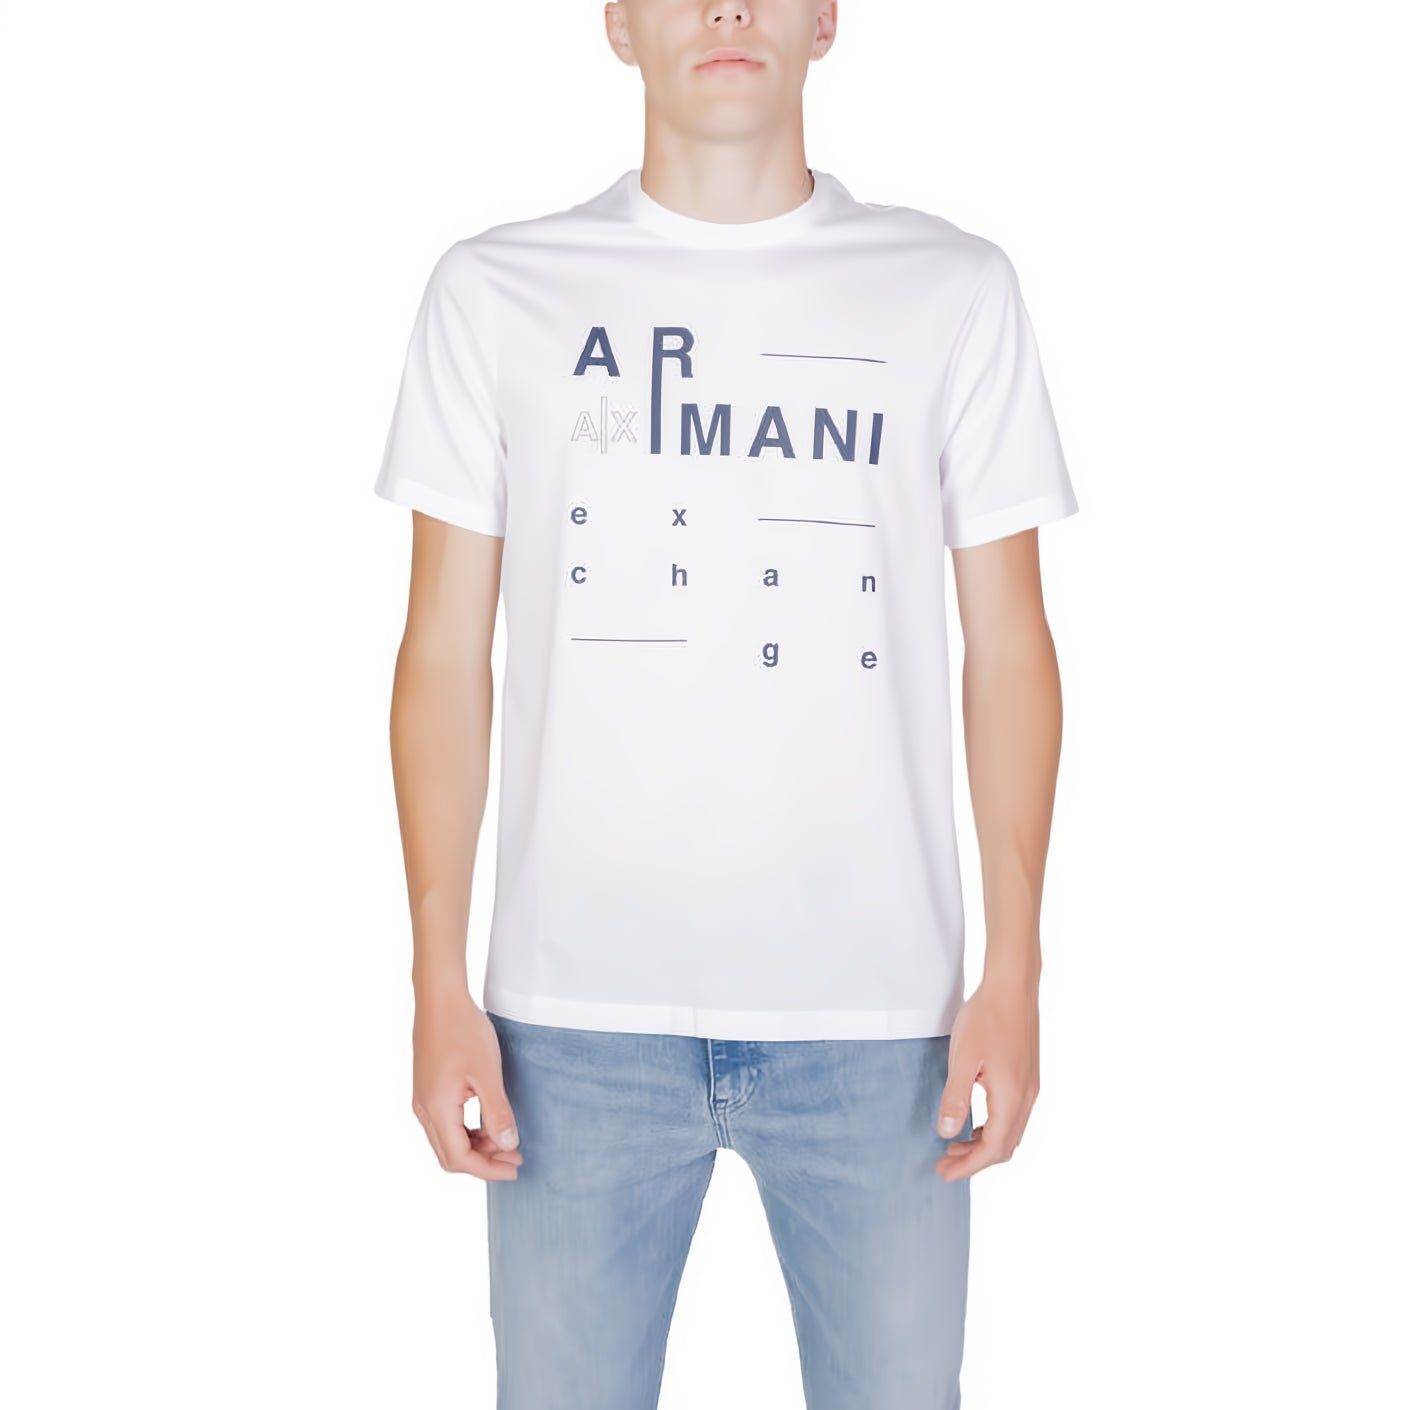 ARMANI EXCHANGE ein Ihre Rundhals, Must-Have für Kleidungskollektion! kurzarm, T-Shirt